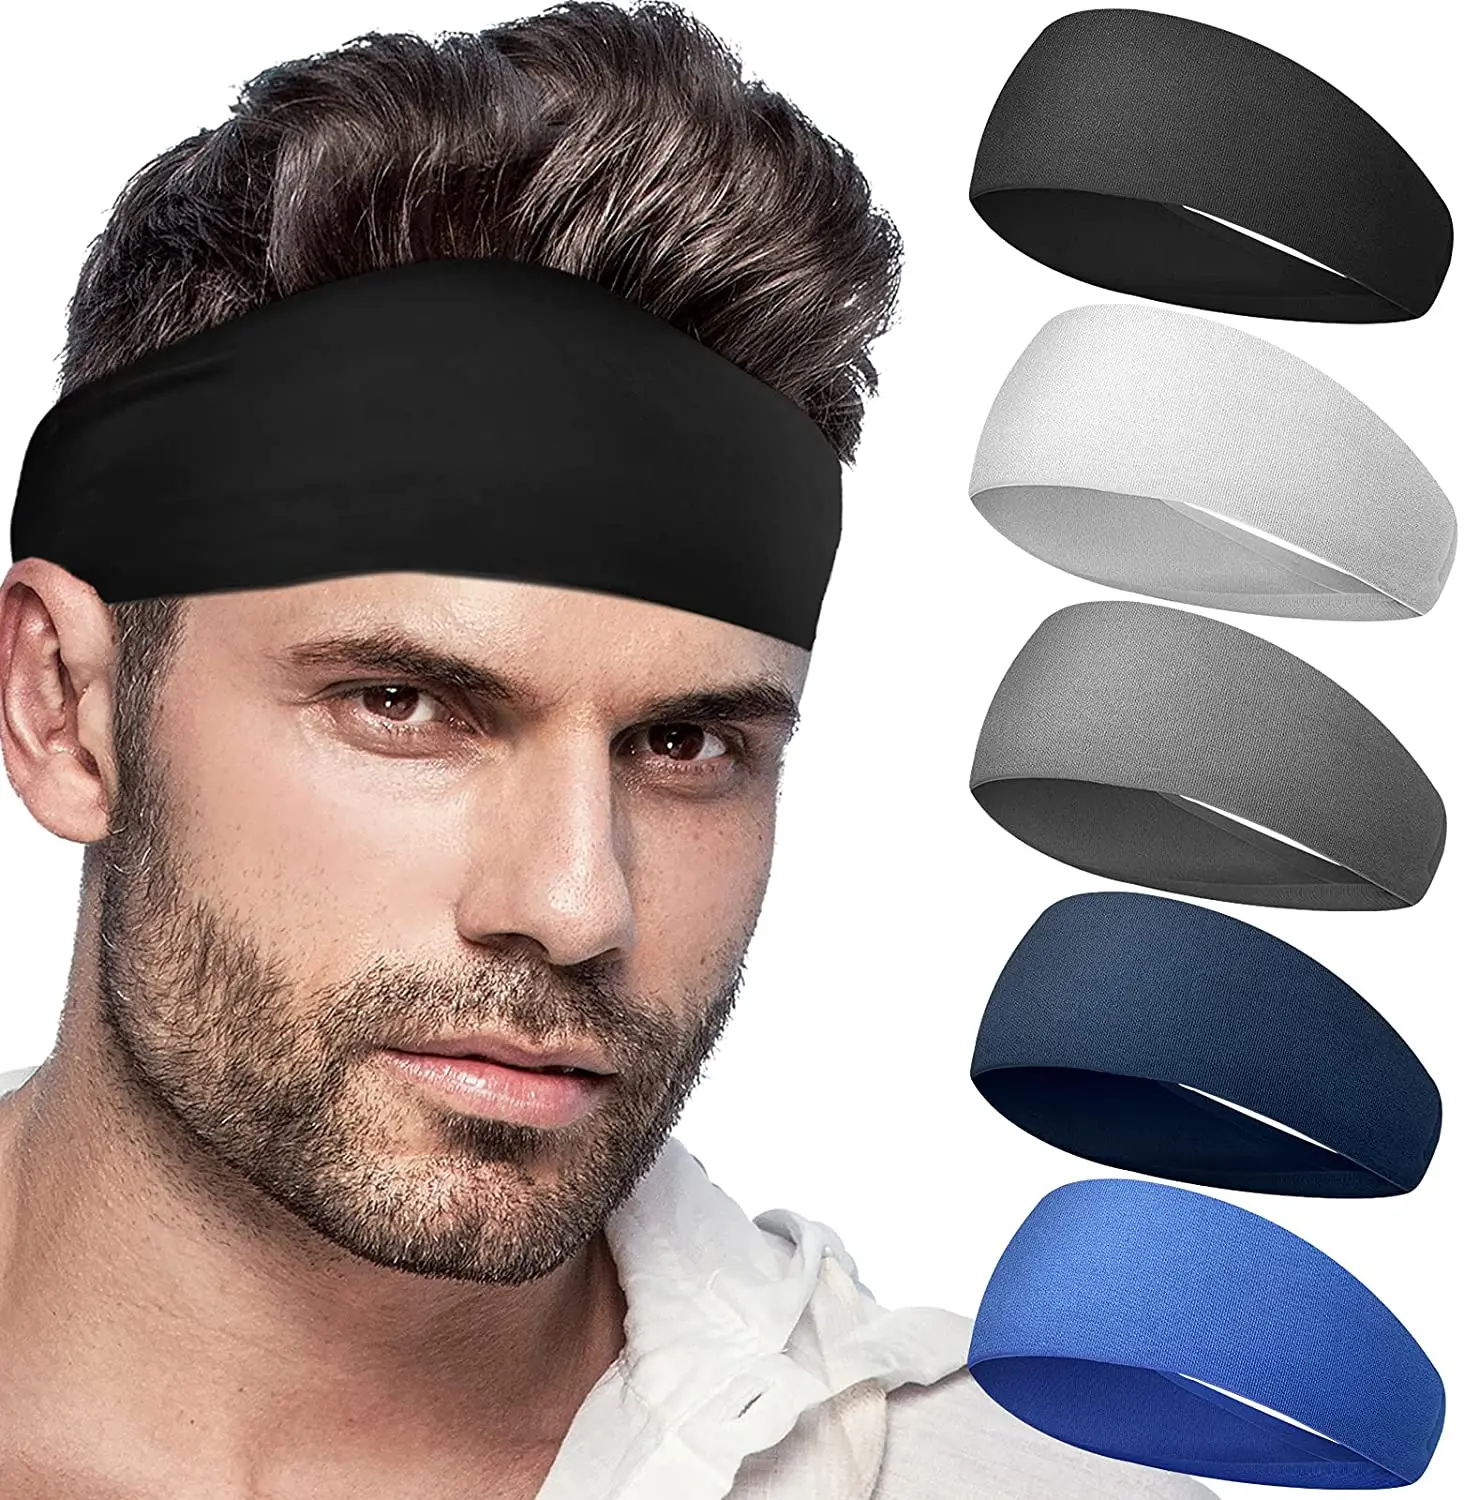 Headbands For Men